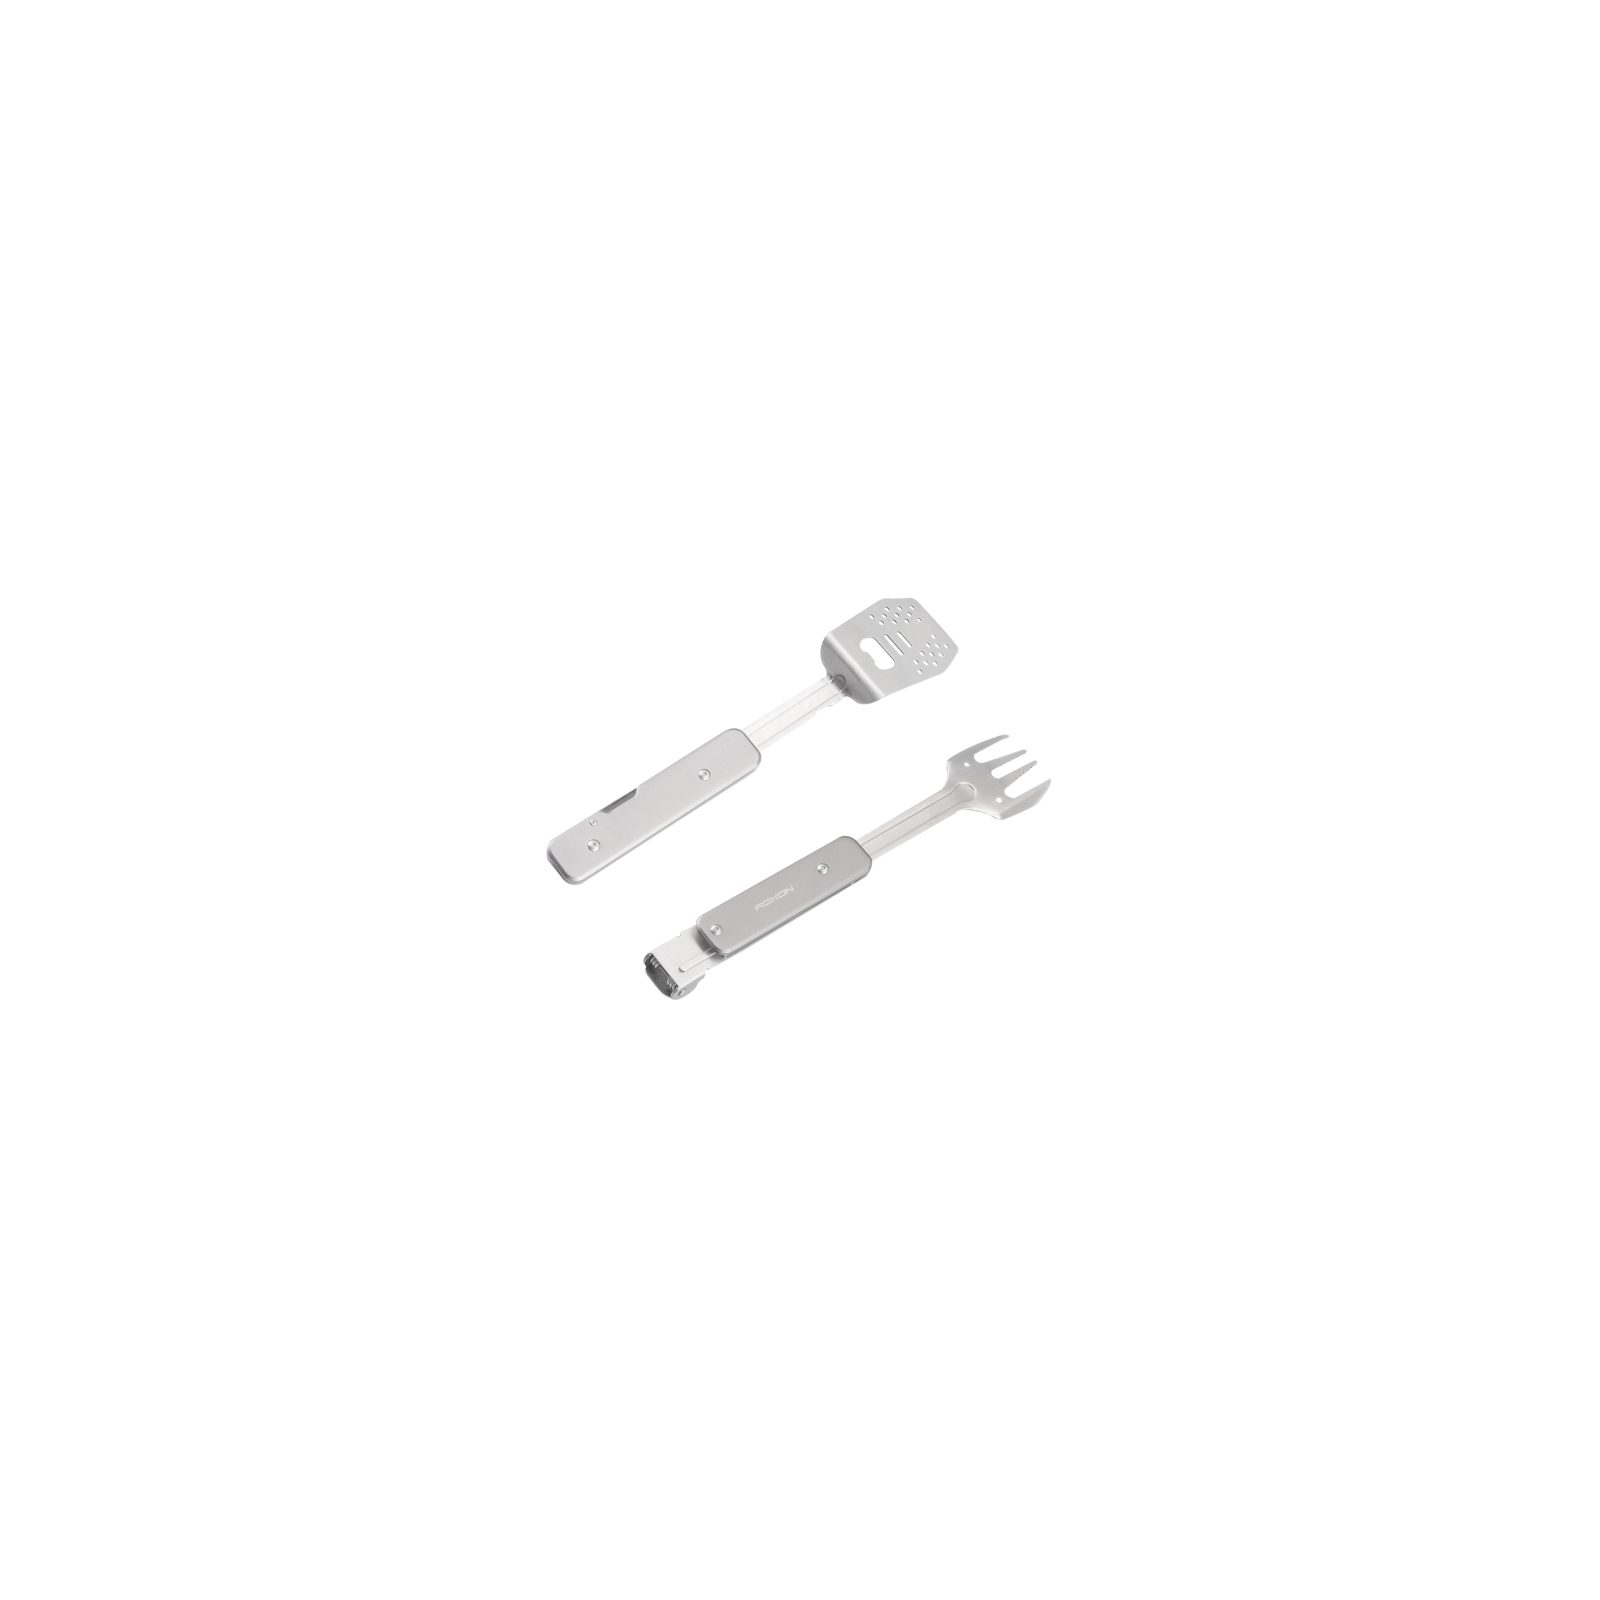 Мультитул Roxon мини набор для барбекю Grey (S602G) изображение 5